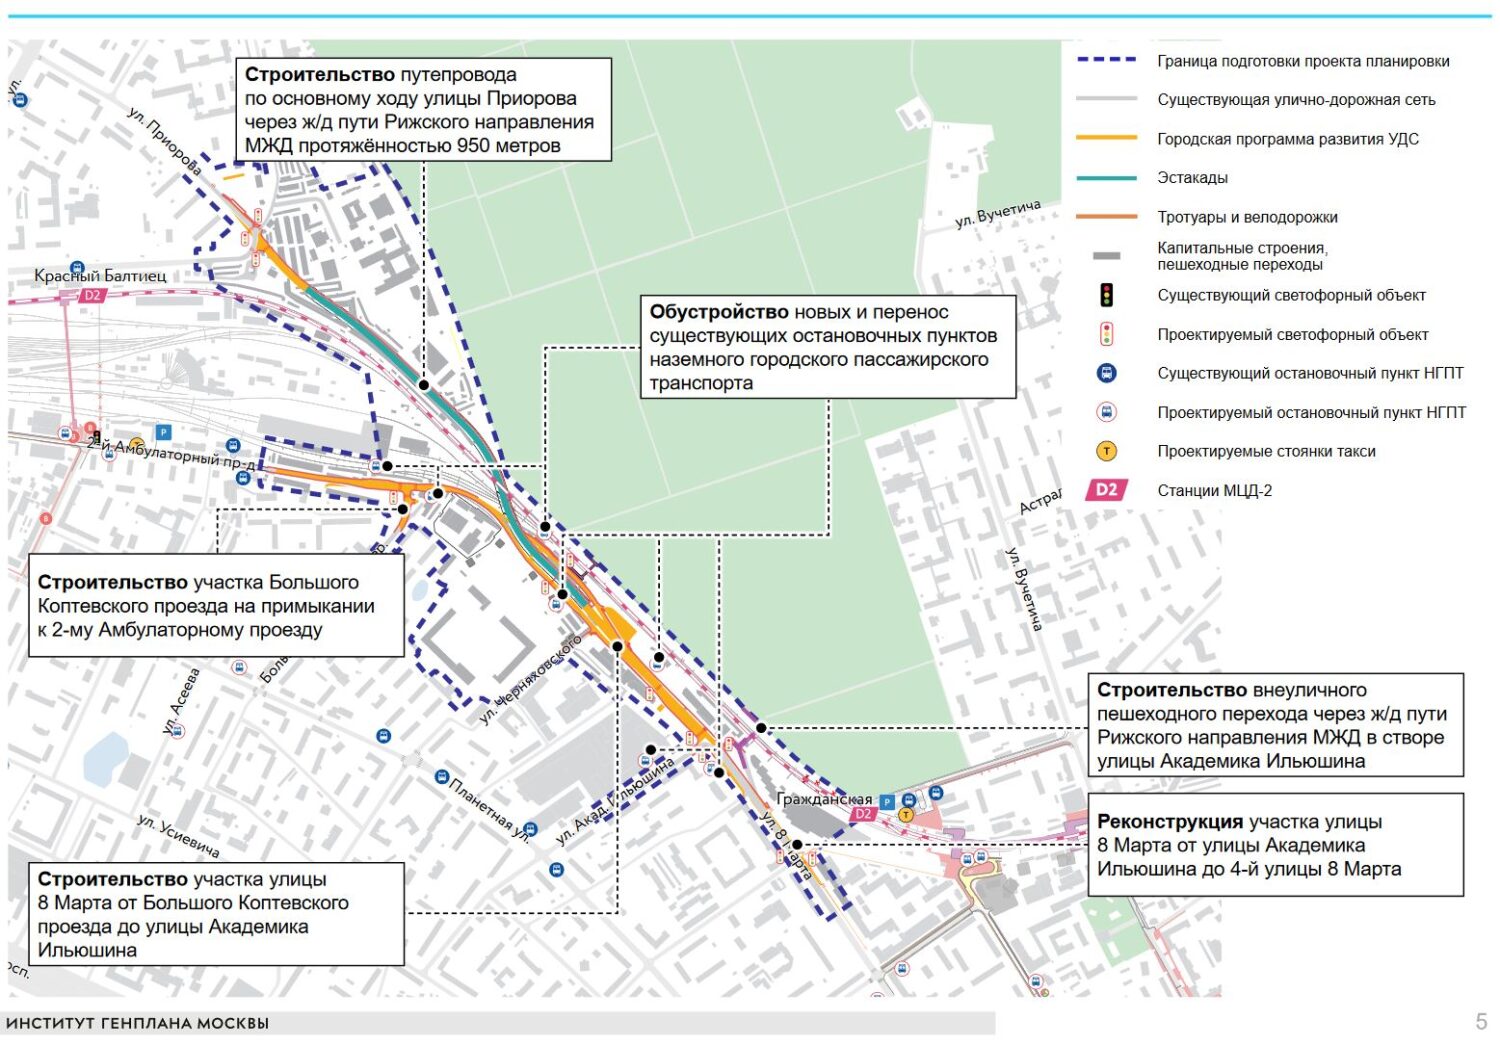 Путепровод и переход построят между тремя районами на севере Москвы